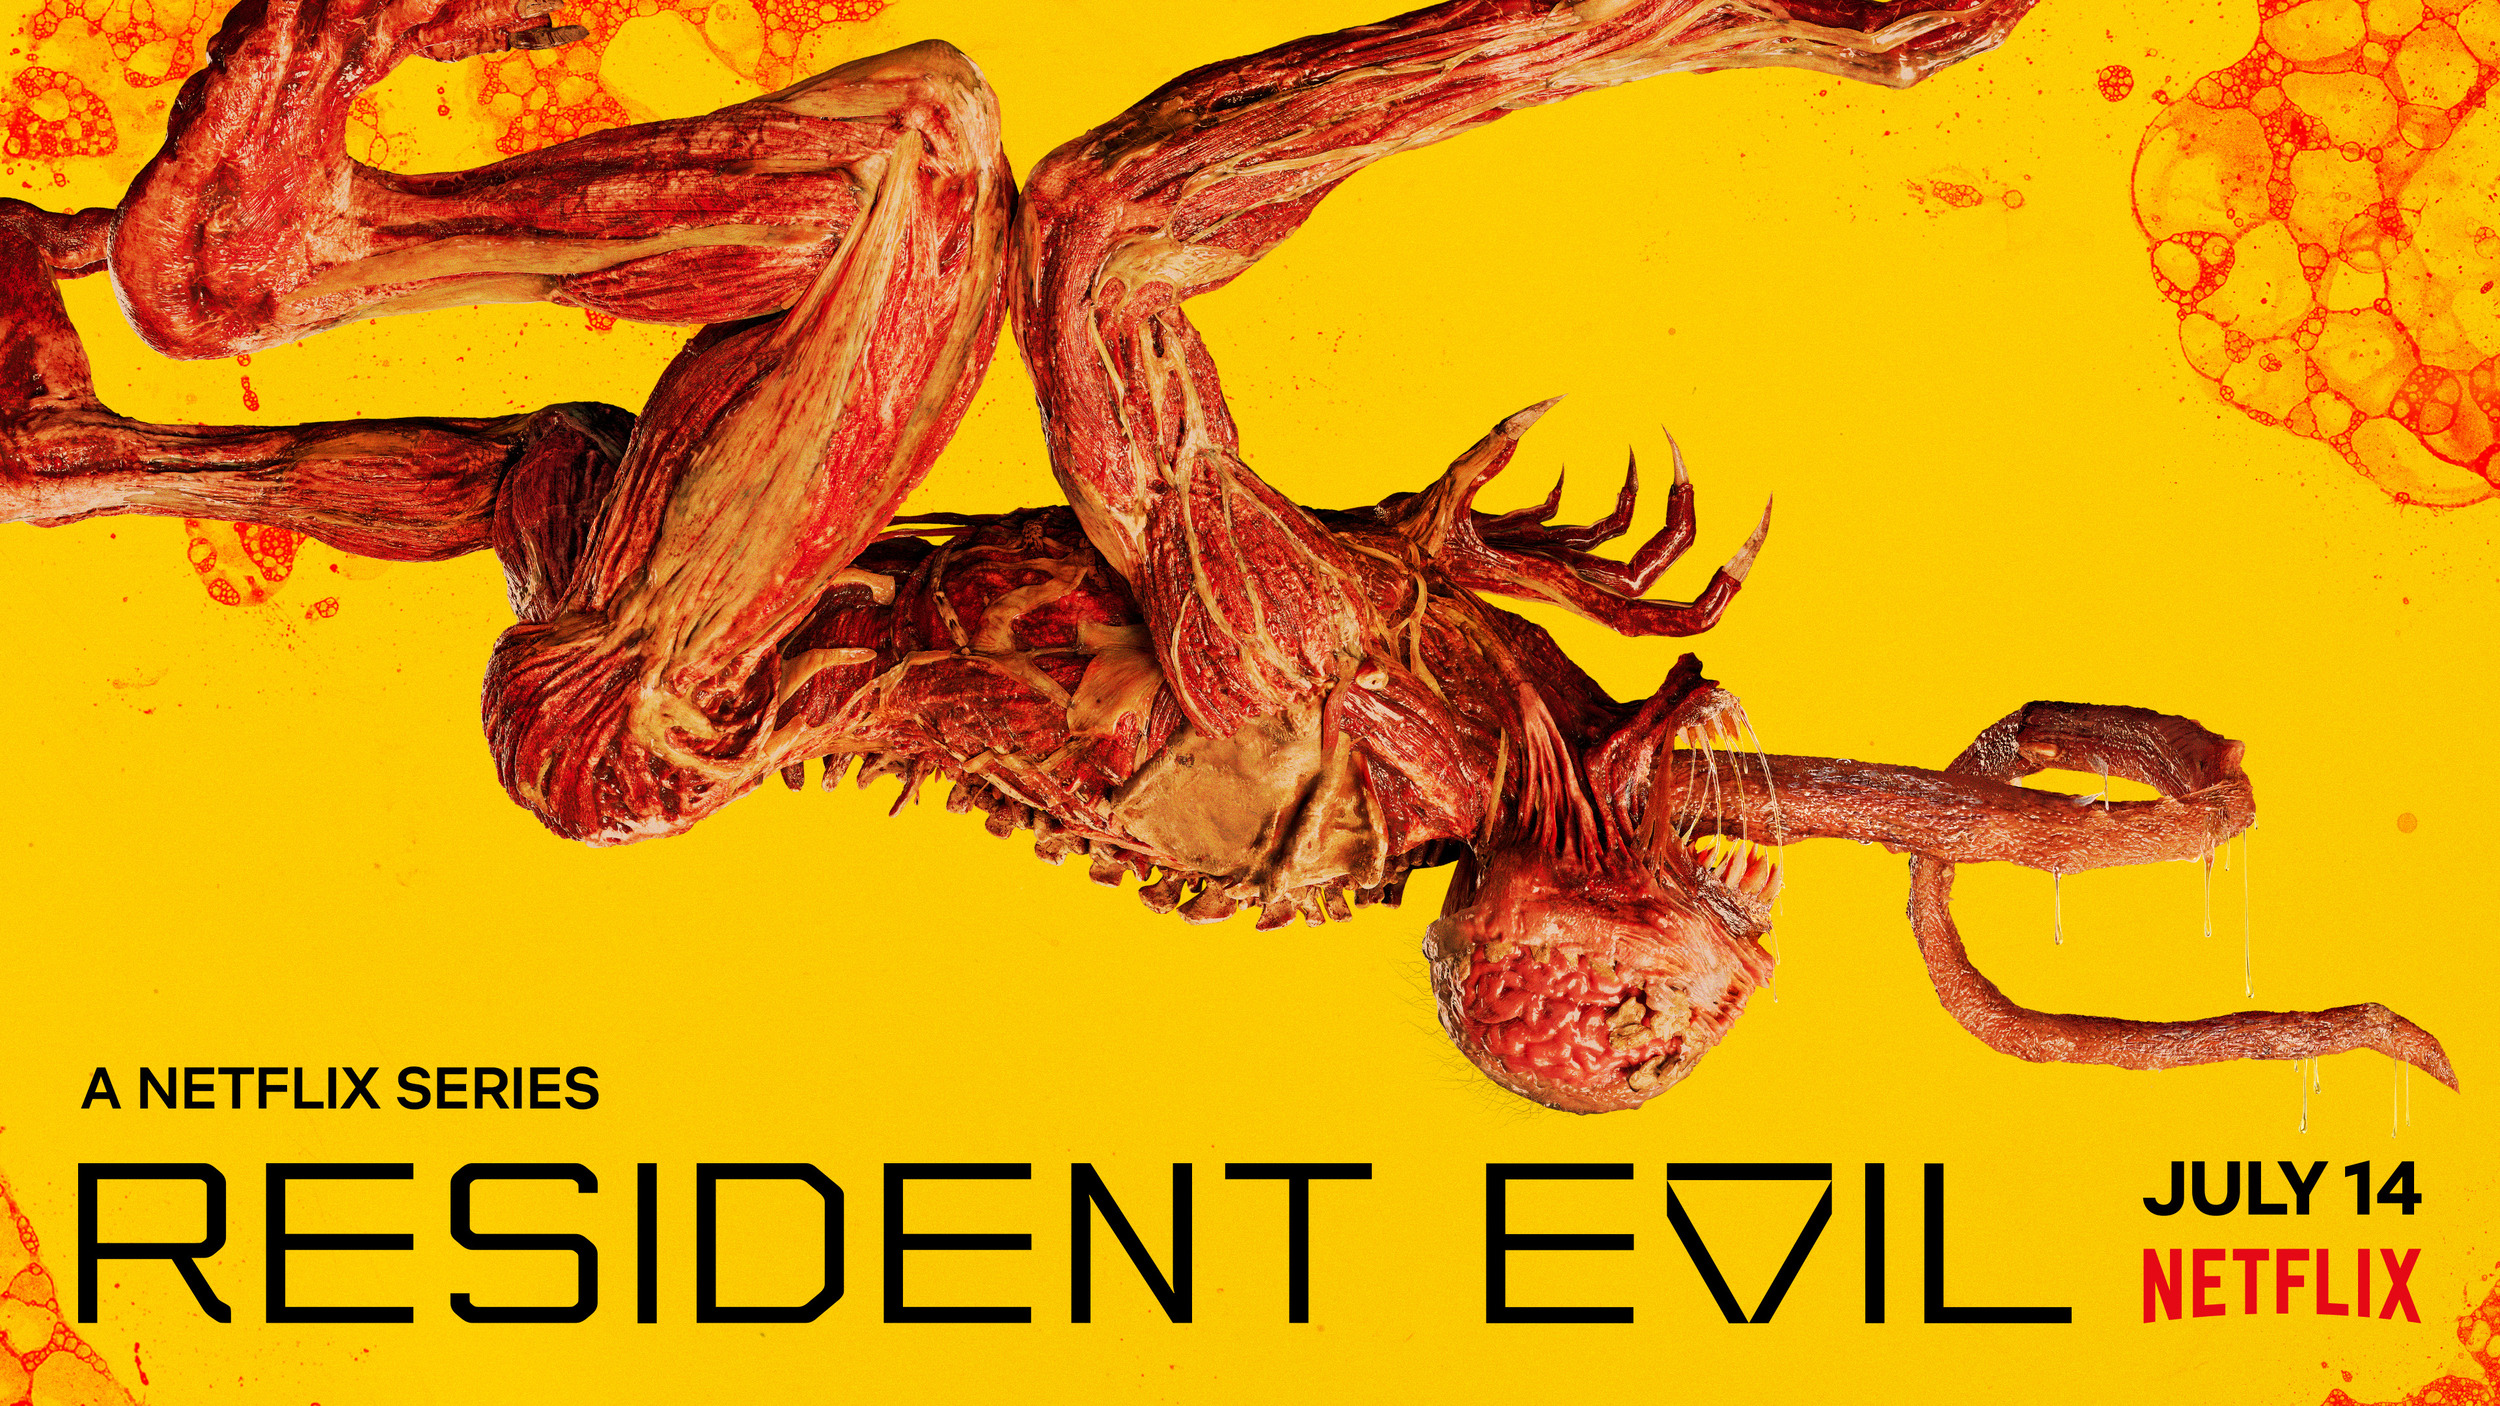 Mega Sized TV Poster Image for Resident Evil (#5 of 13)